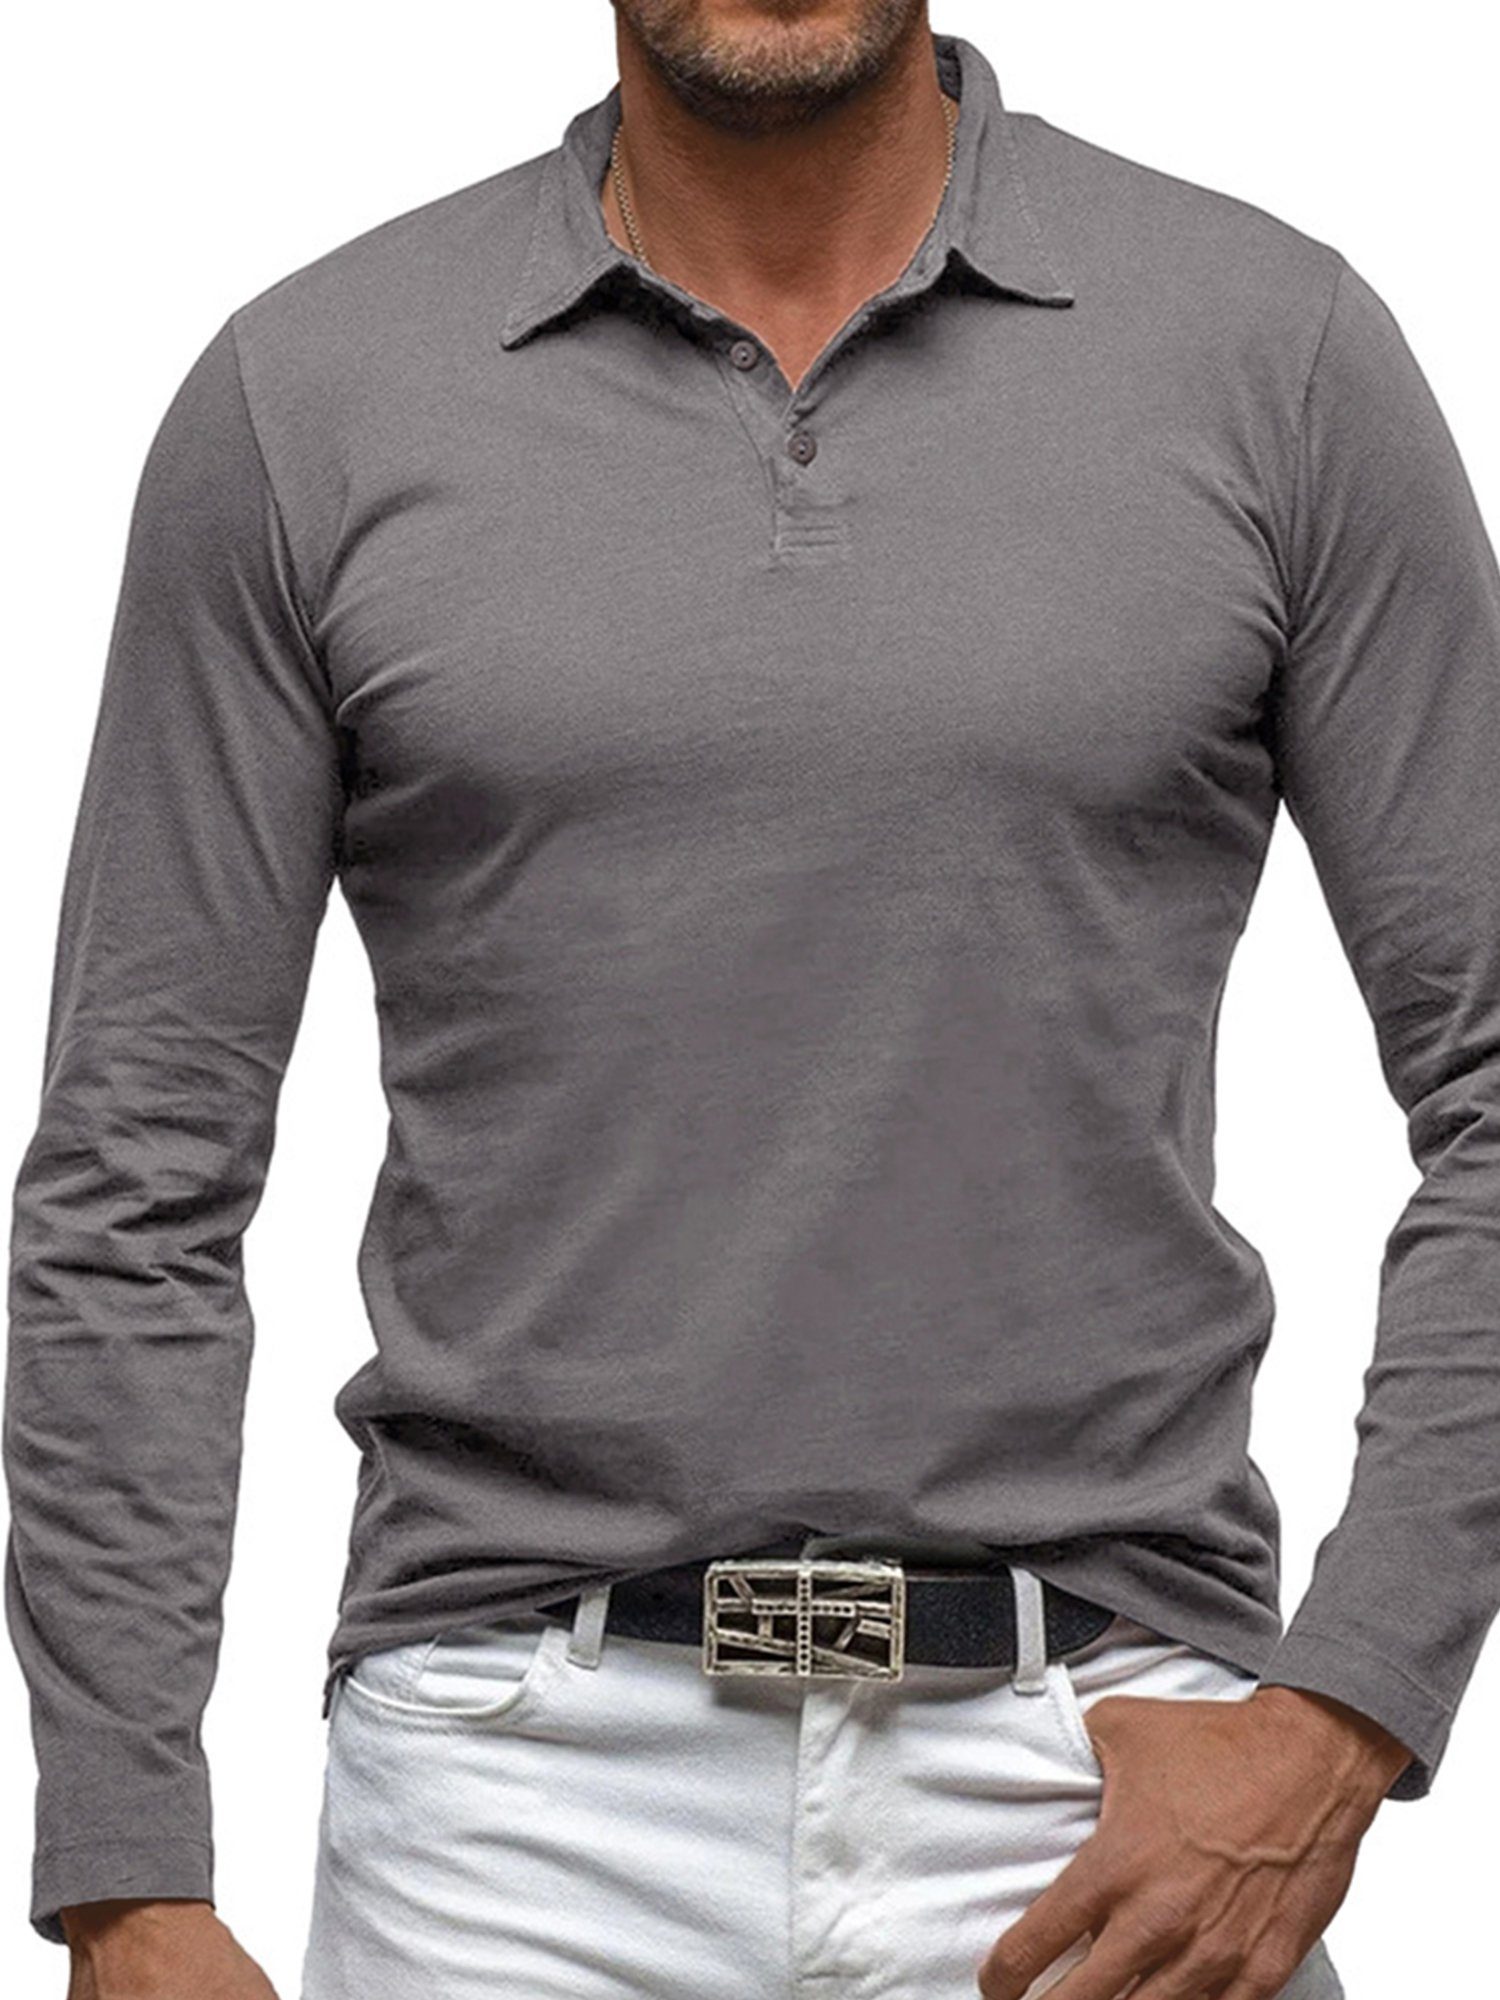 Lapastyle Langarmshirt Herren Einfarbiges Polo-shirt mit Revers und  Knopfversschlus Slim fit, passend zu einer Vielzahl von Freizeitstilen